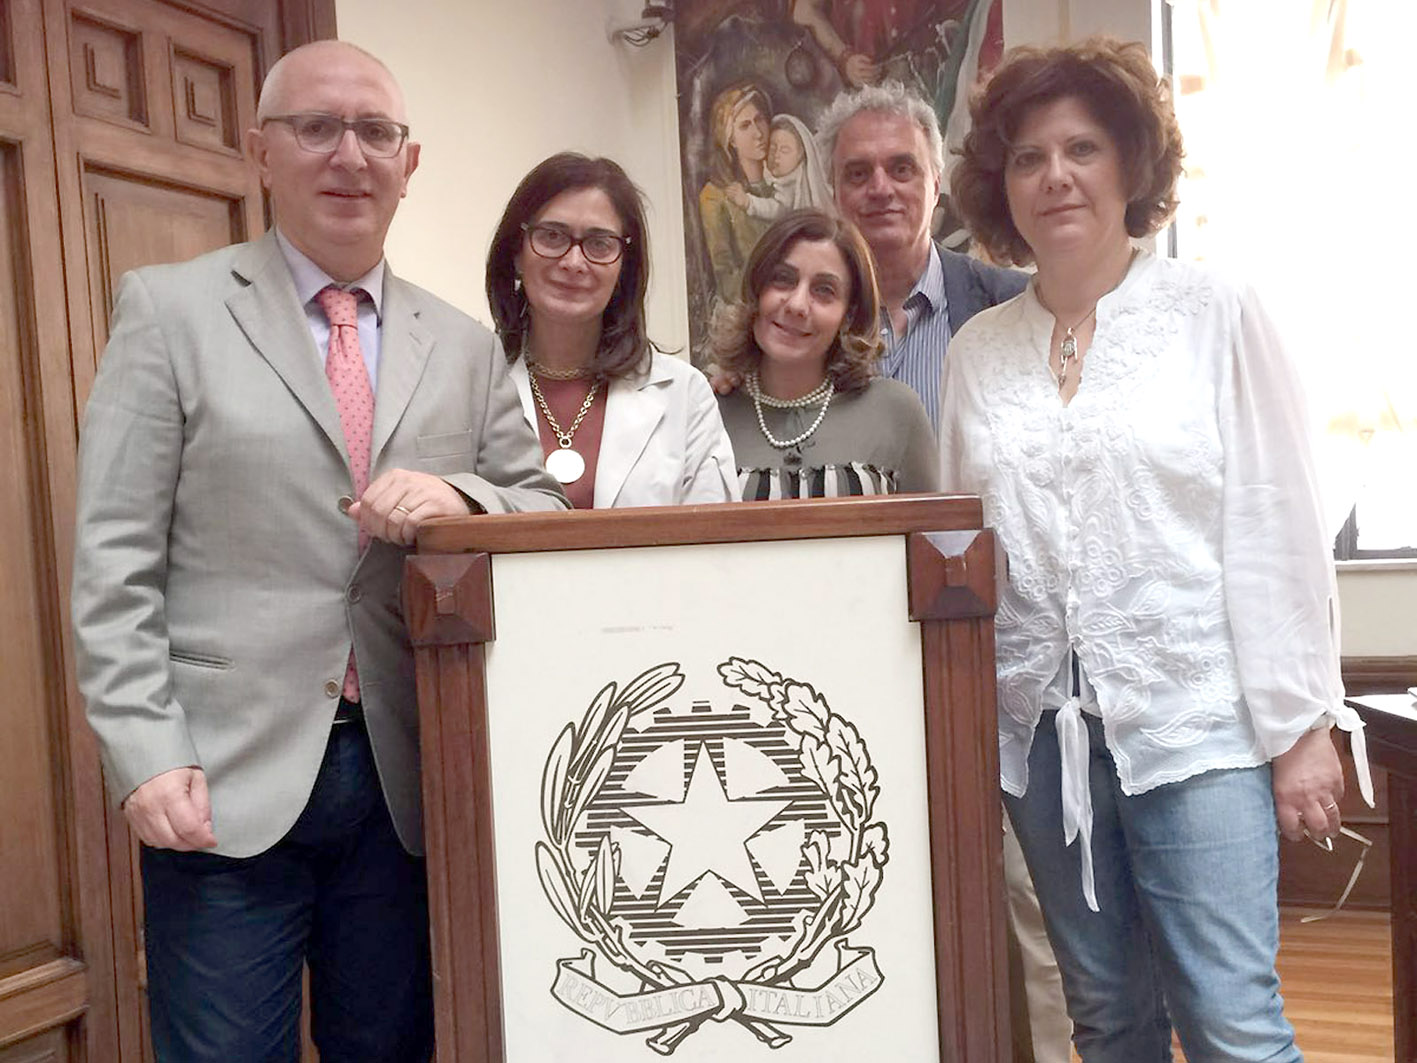 Nella foto da sinistra:
Gianfranco Puccio, Rosanna Colao, Sabrina Curcio, Raffaele Di Lorenzo e Ornella De Vito